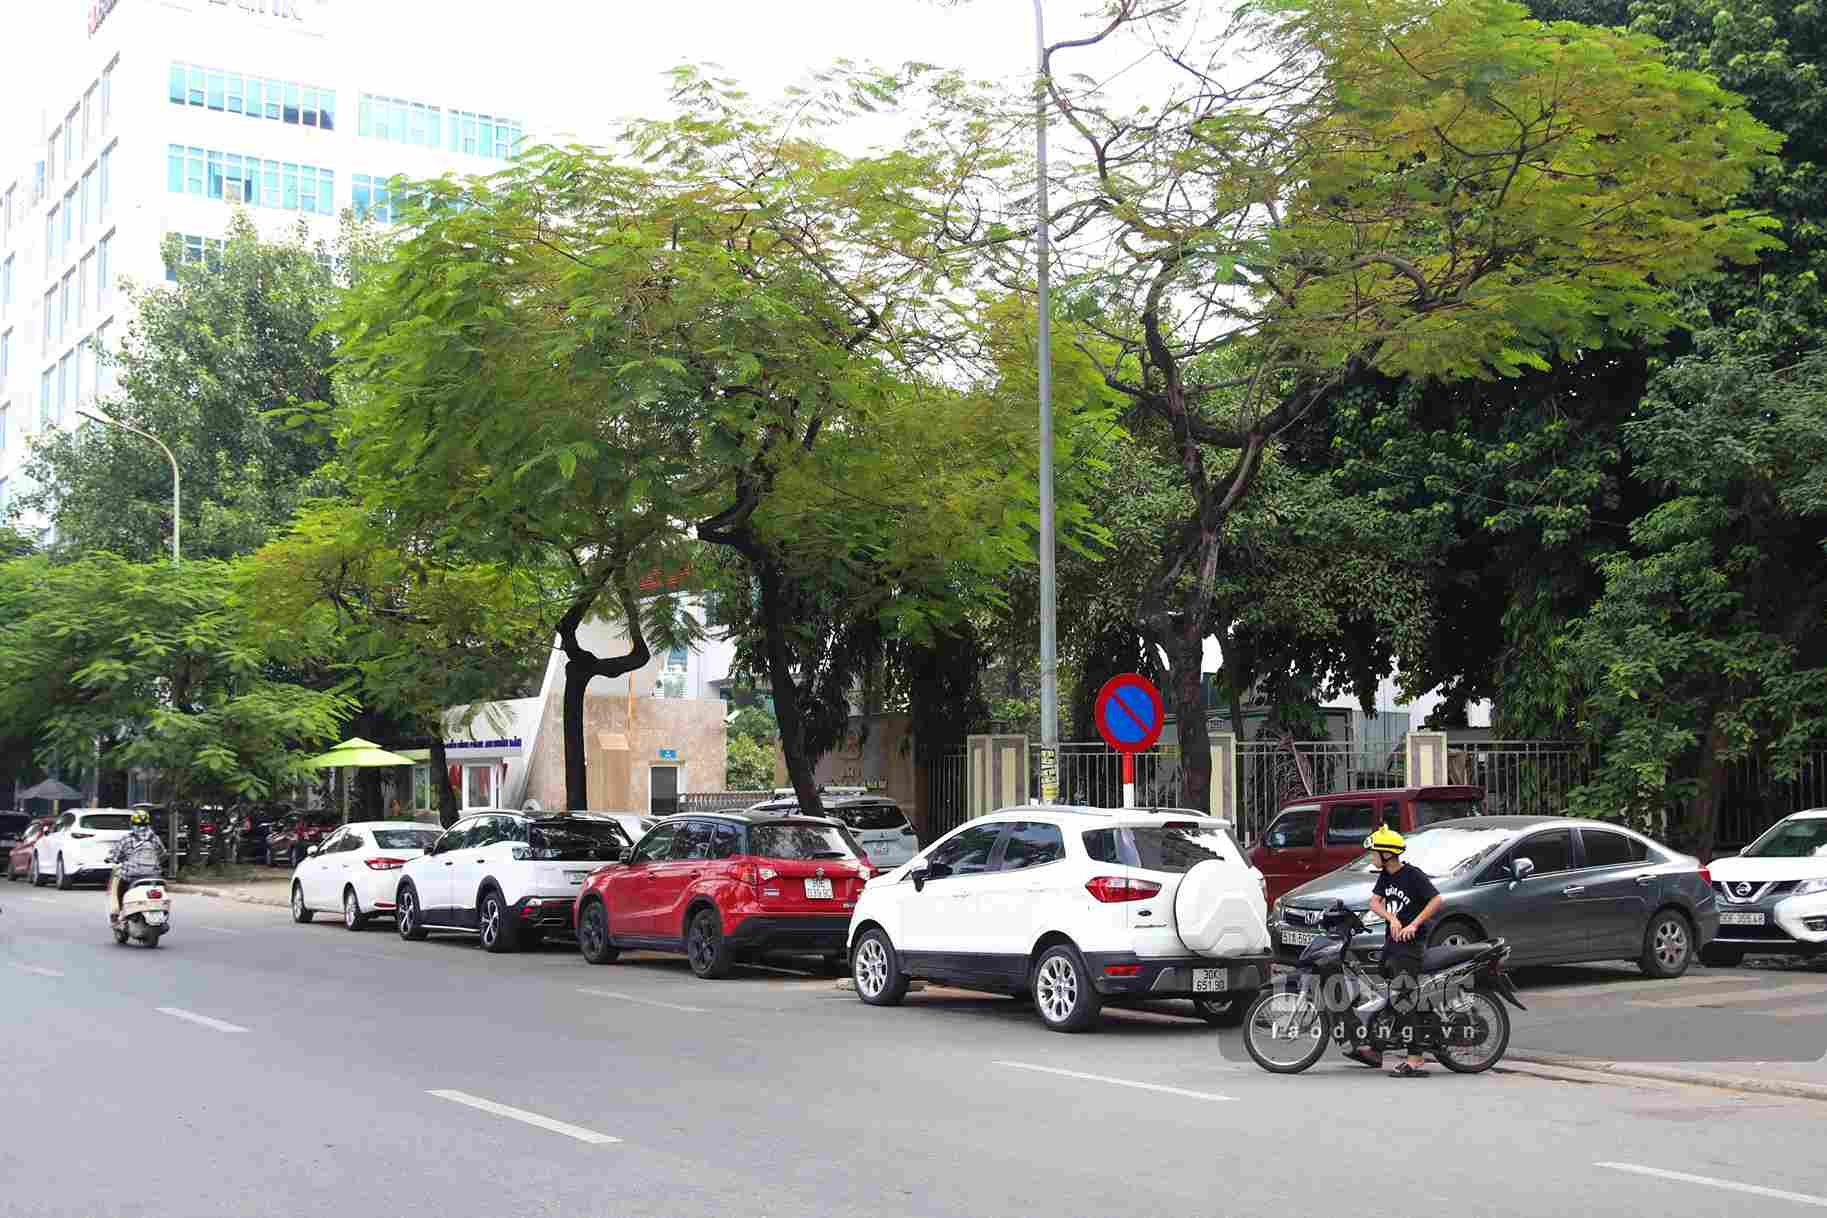 Đường Lê Đức Thọ hướng đi Hồ Tùng Mậu dù biển báo “cấm đỗ xe” được lắp đặt một mình những xe ô tô dẫn đỗ dài trên đường.